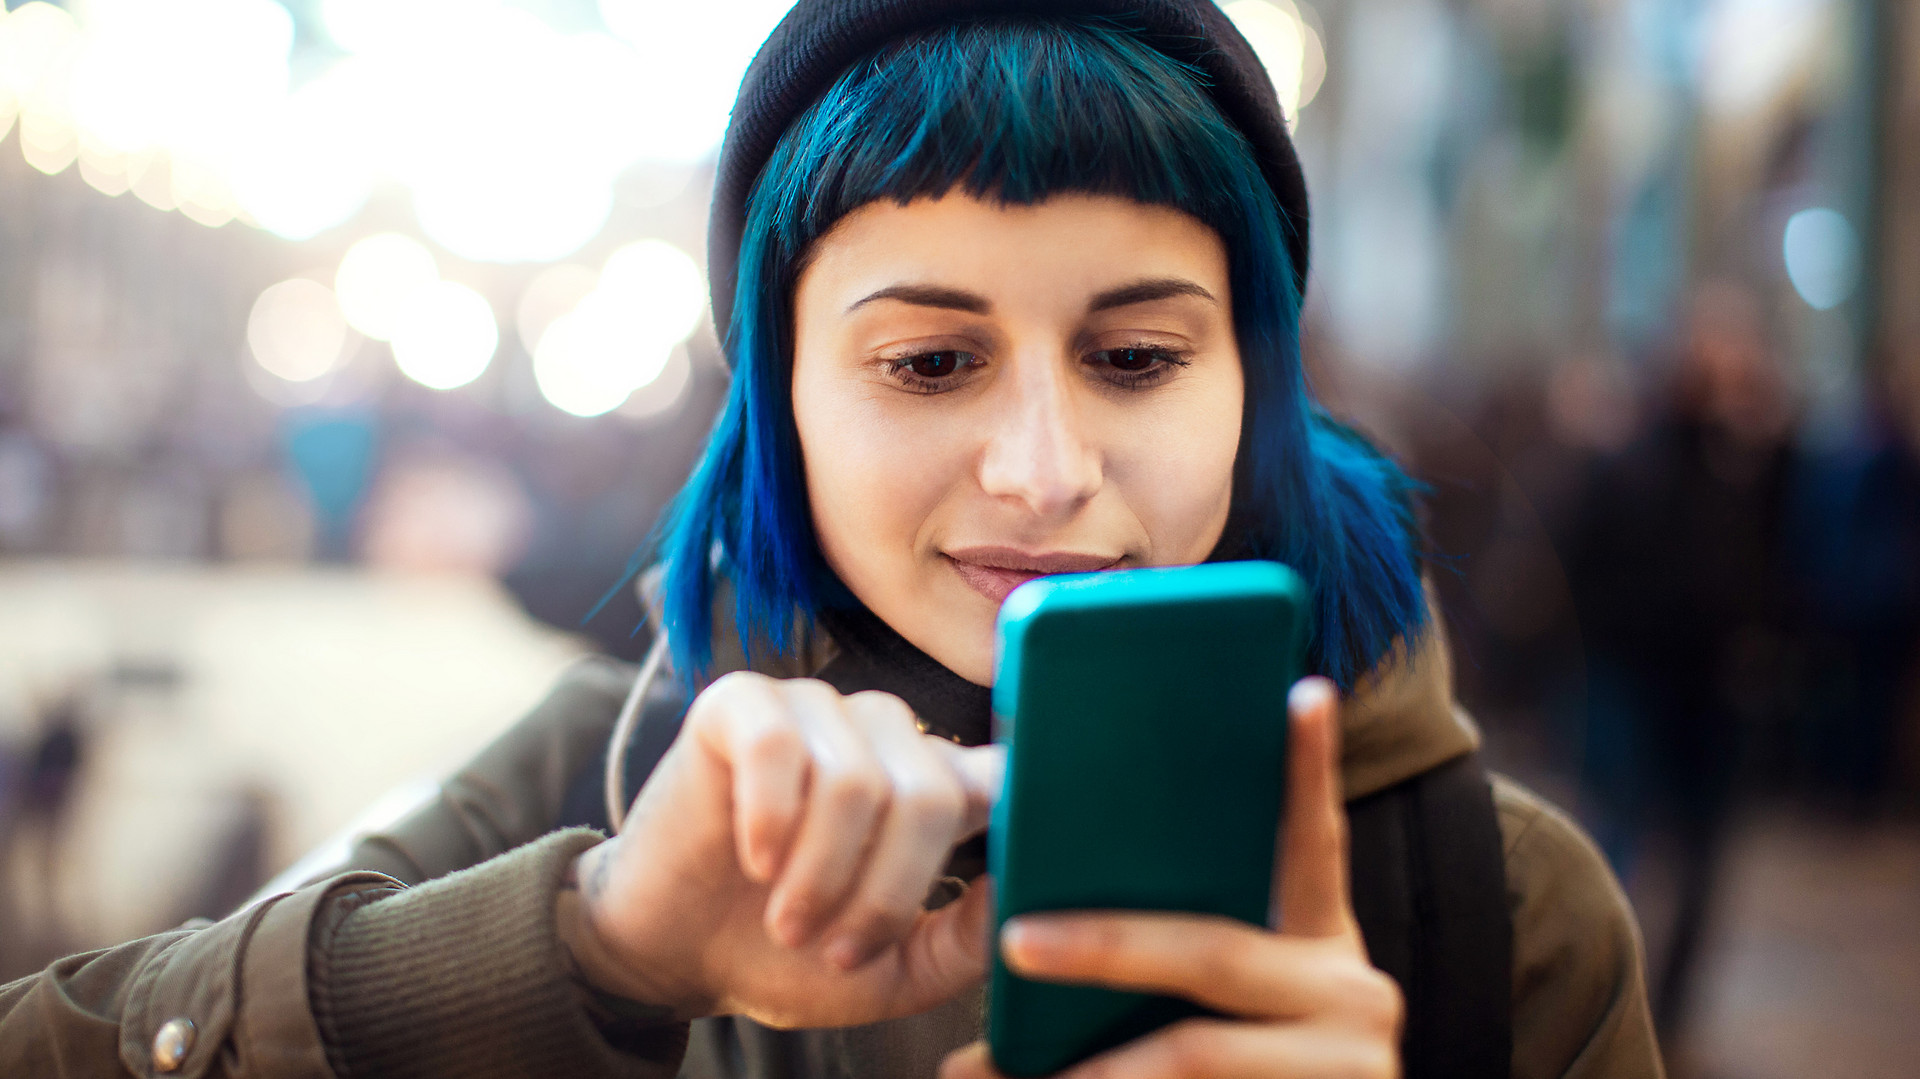 Eine junge Frau mit blauen Haaren schaut auf ihr Smartphone und tippt auf dessen Bildschirm. Marco Piunti via Getty Images